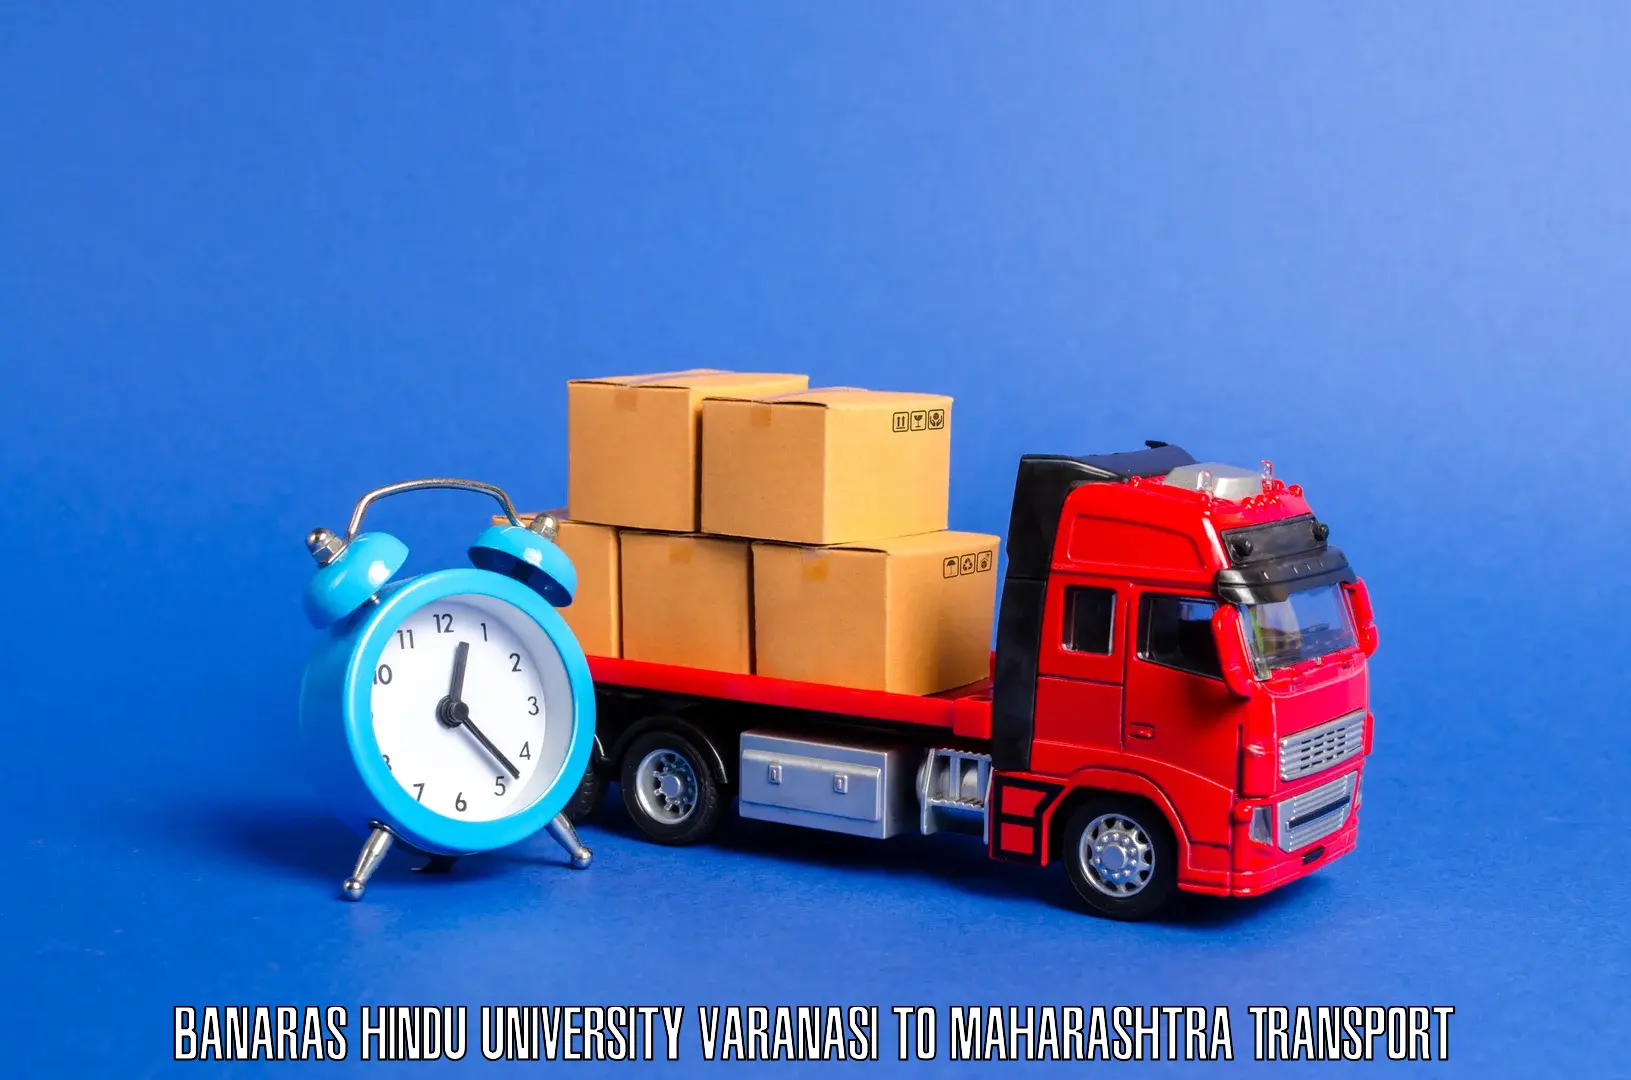 Daily transport service Banaras Hindu University Varanasi to Maharashtra